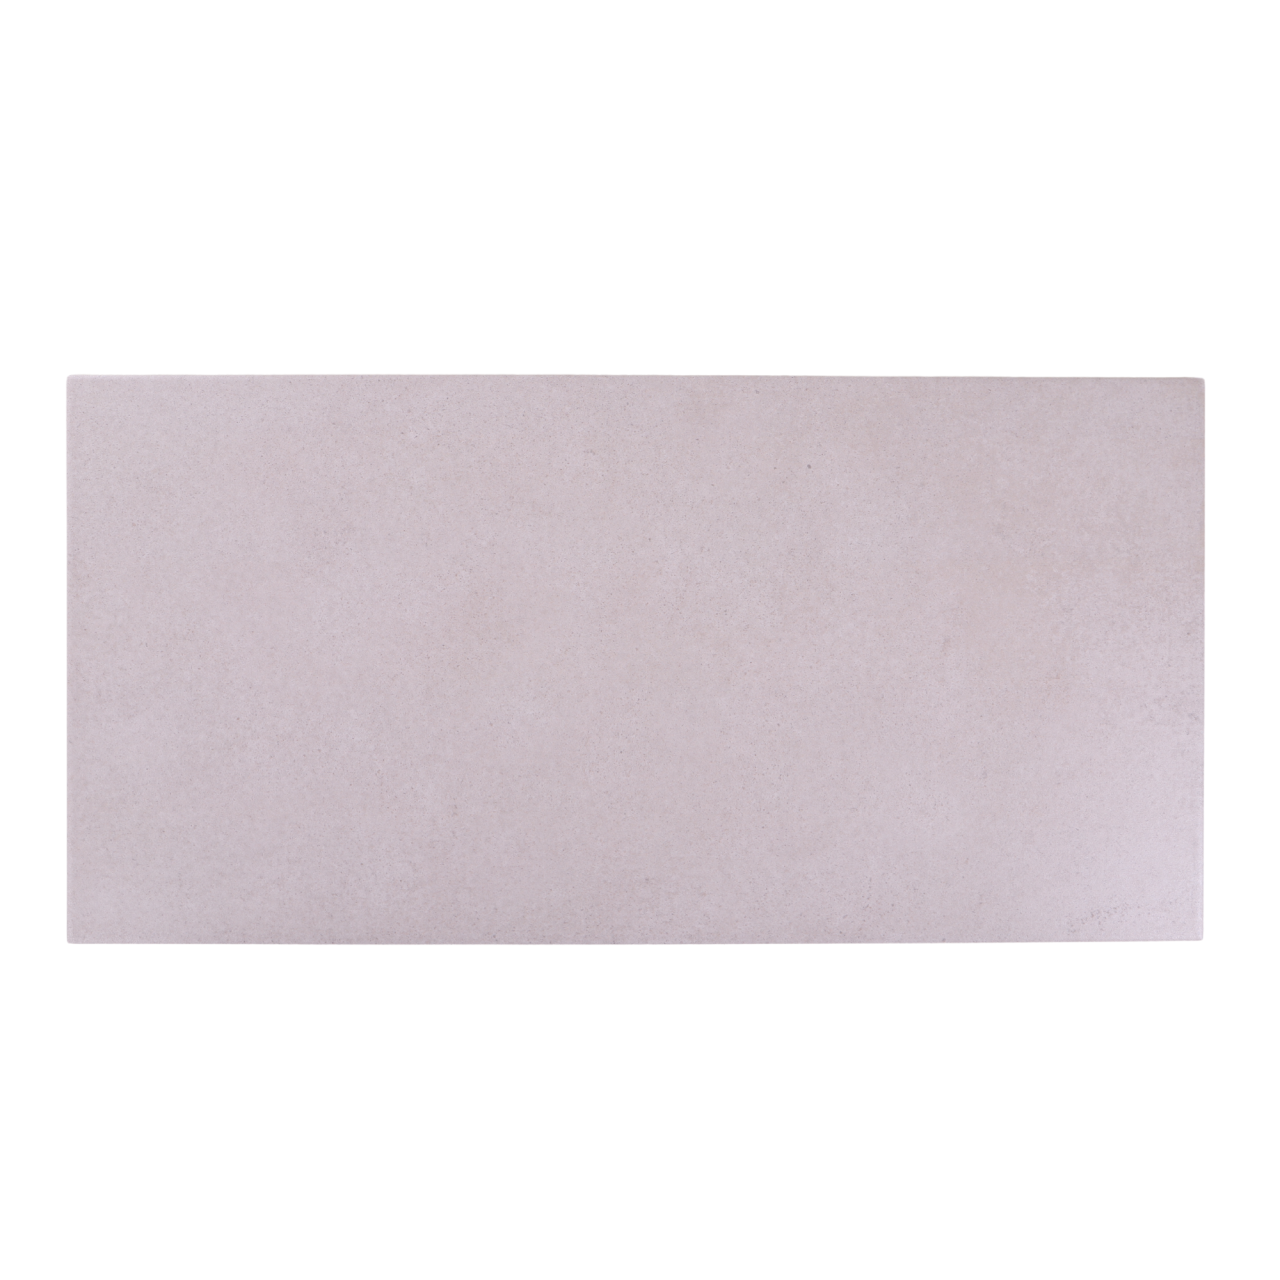 30x60 cm UP Blanco Fehér csúszásmentes greslap burkolat